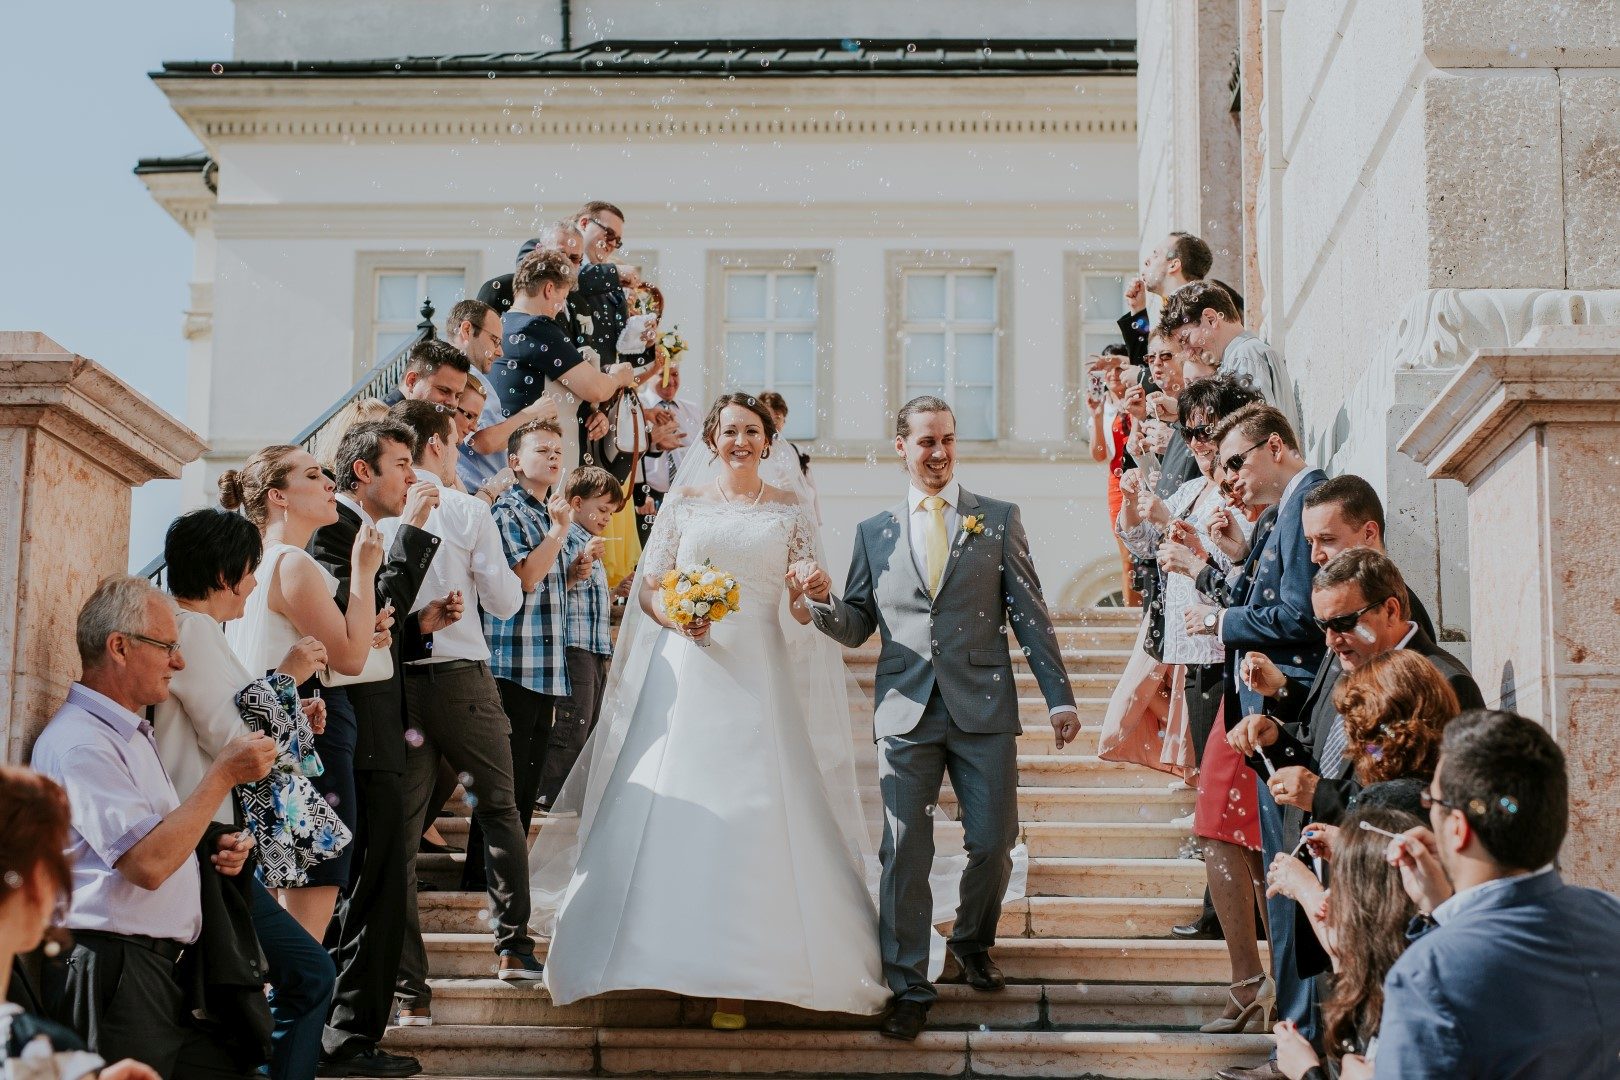 ,tálos sarolta,charlot photography,esküvő,esküvői fotó,esküvői fotós,magyar fotós,magyar esküvő,magyar esküvői fotós,legjobb esküvői fotós,legszebb esküvői fotó,